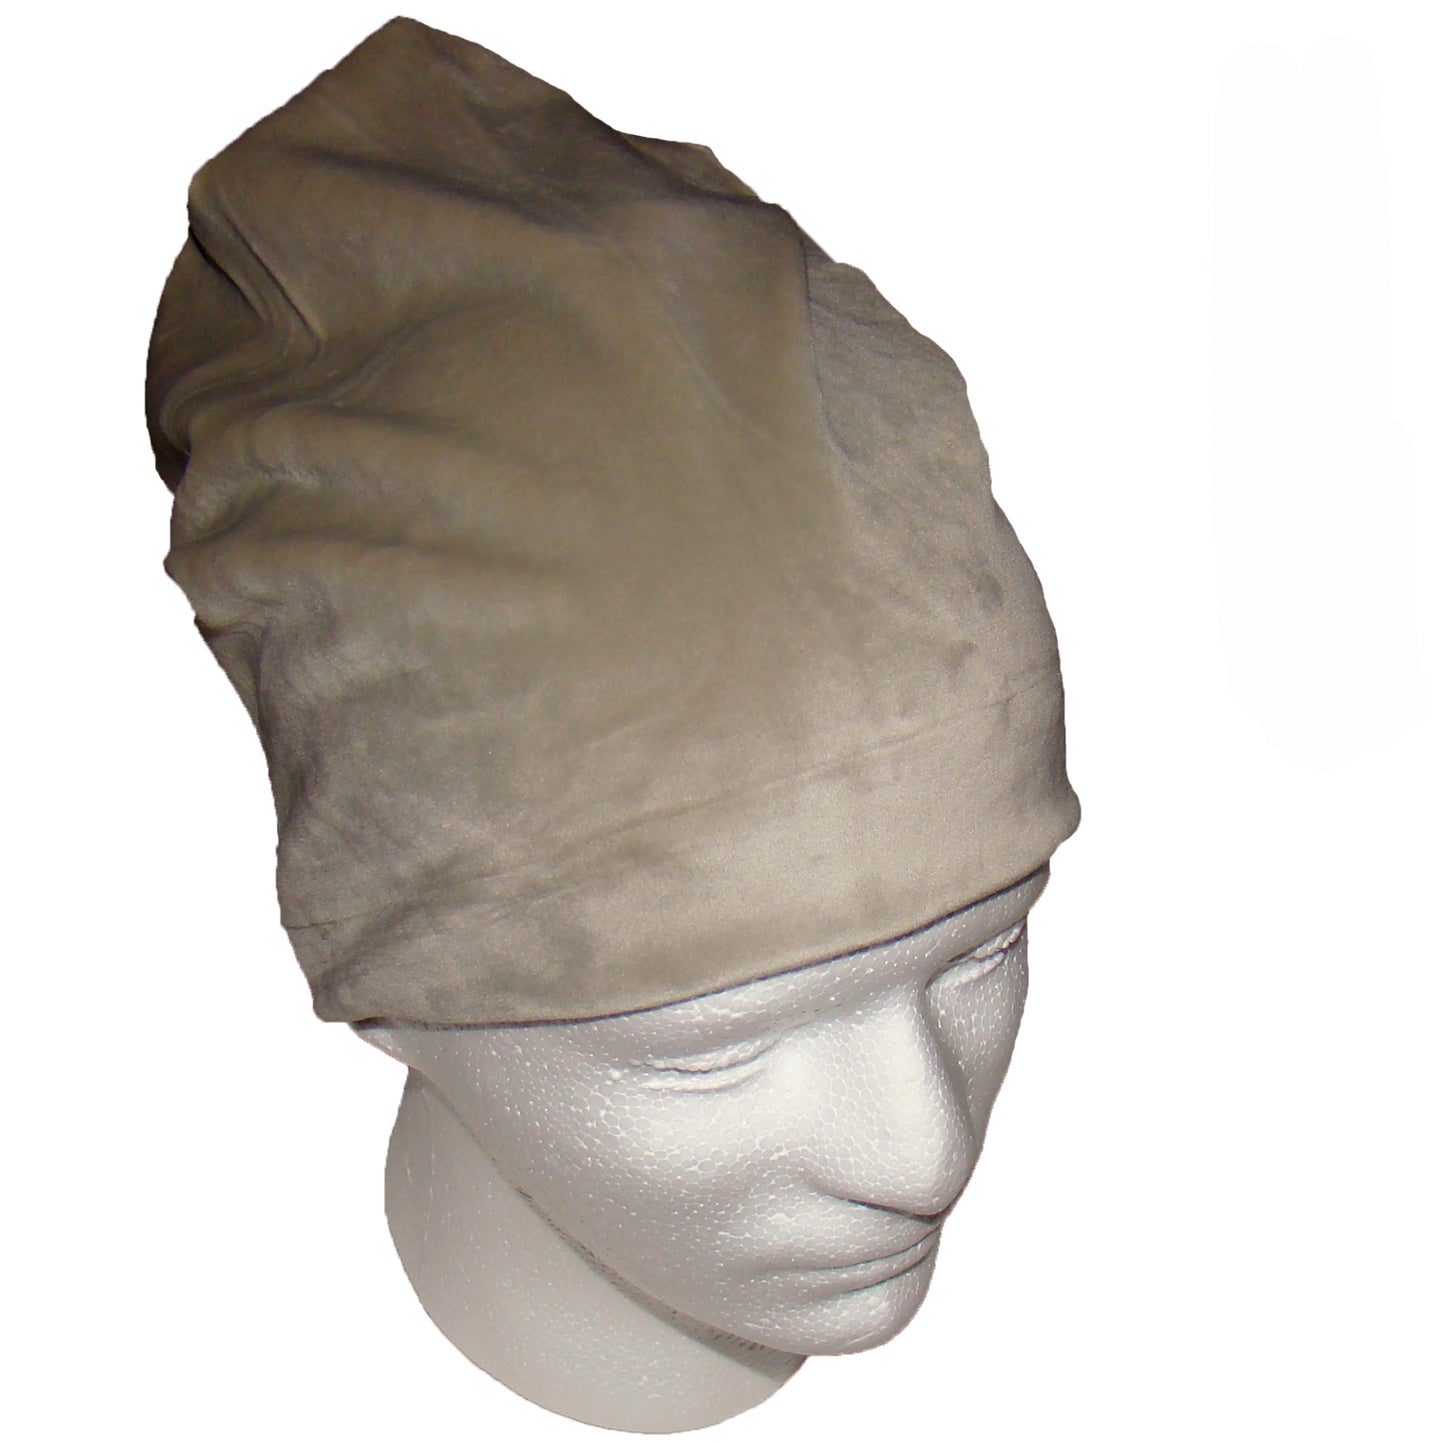 Berretto Cappello Cuffia uomo donna invernale cotone diversi colori taglia unica